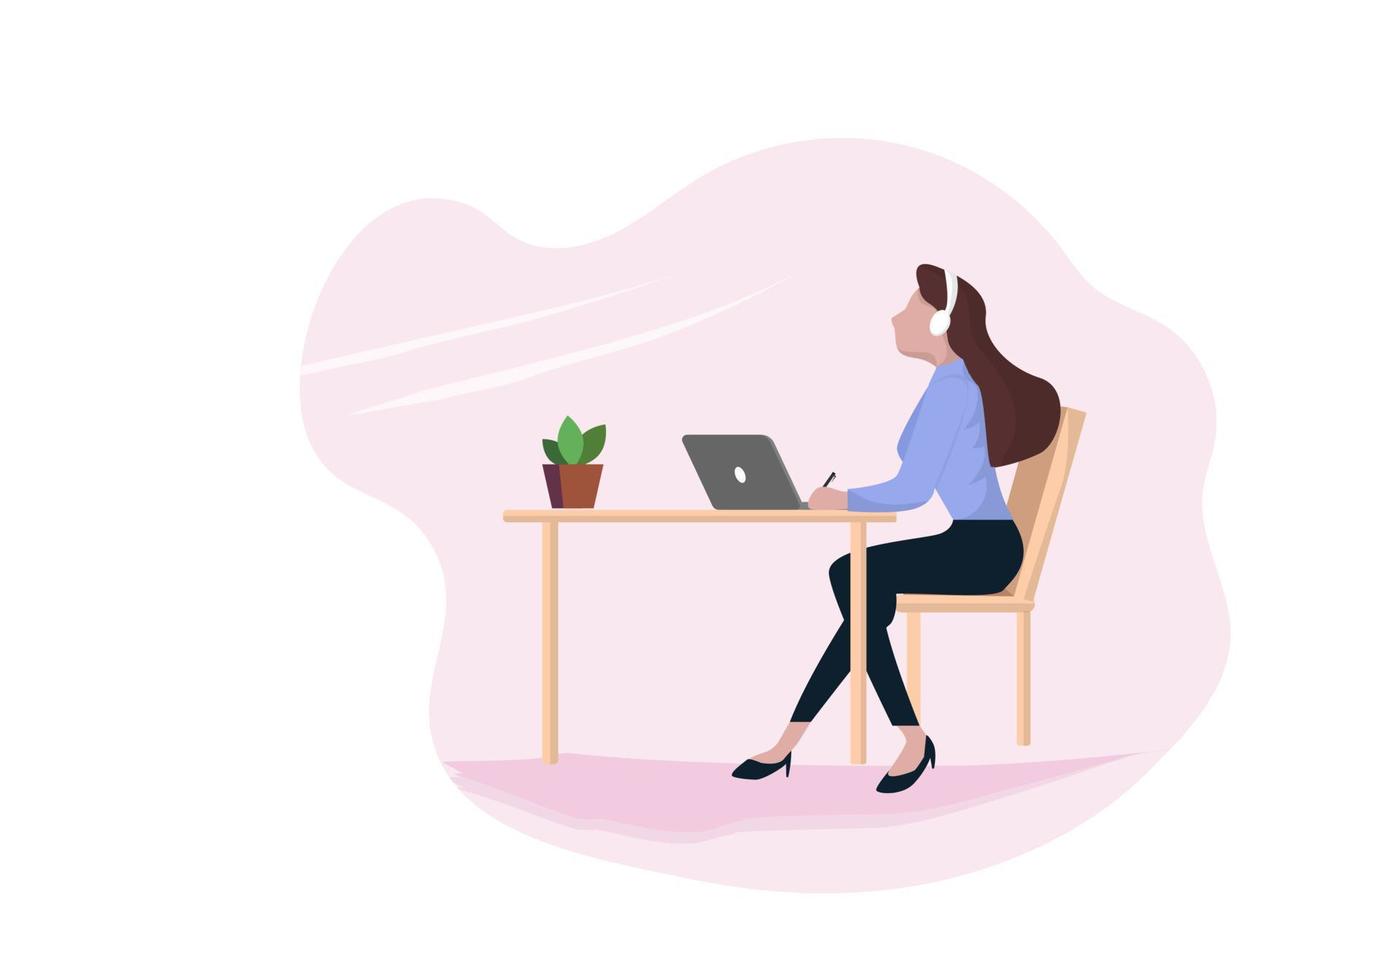 une femme d'affaires utilisant un ordinateur portable assis à une table portant des écouteurs pour se détendre processus de travail femme personnage de dessin animé illustration vectorielle plane vecteur